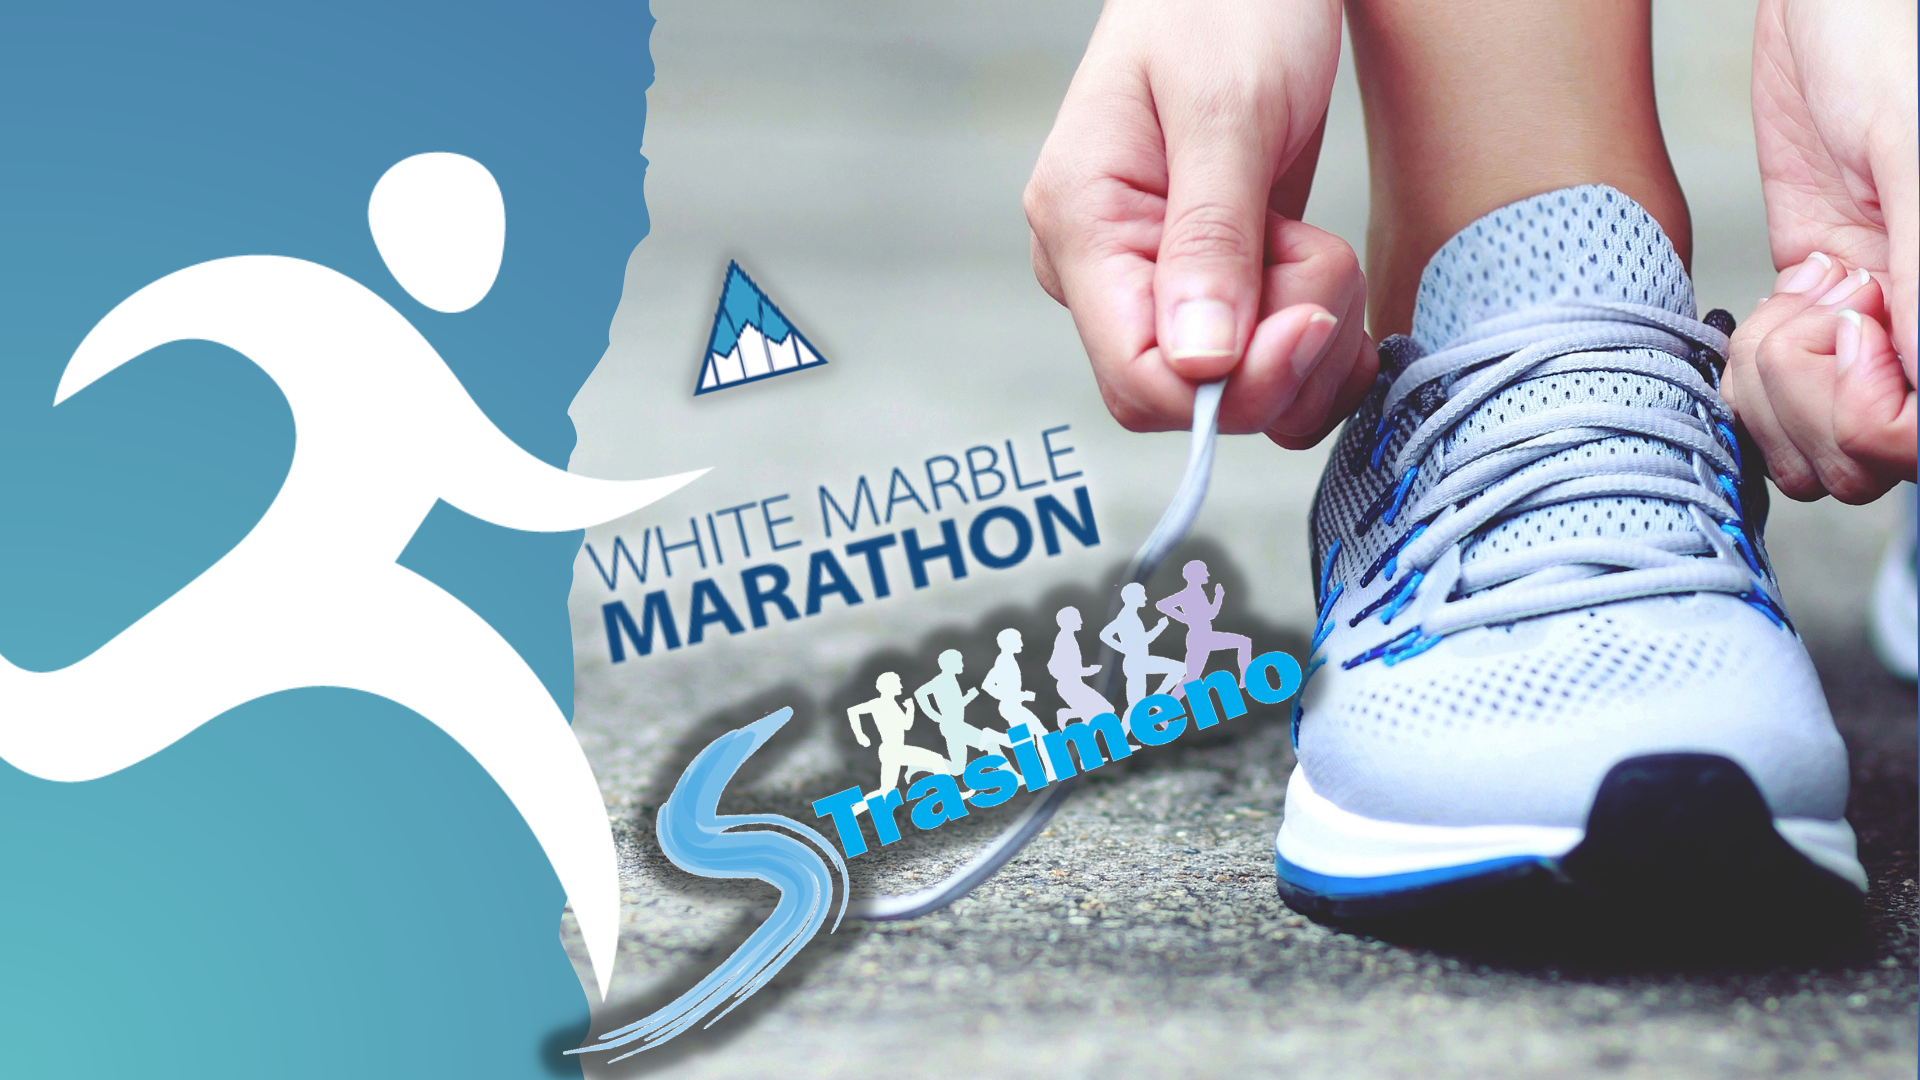 Allacciatevi le scarpe: White Marble Marathon e Strasimeno vi aspettano!